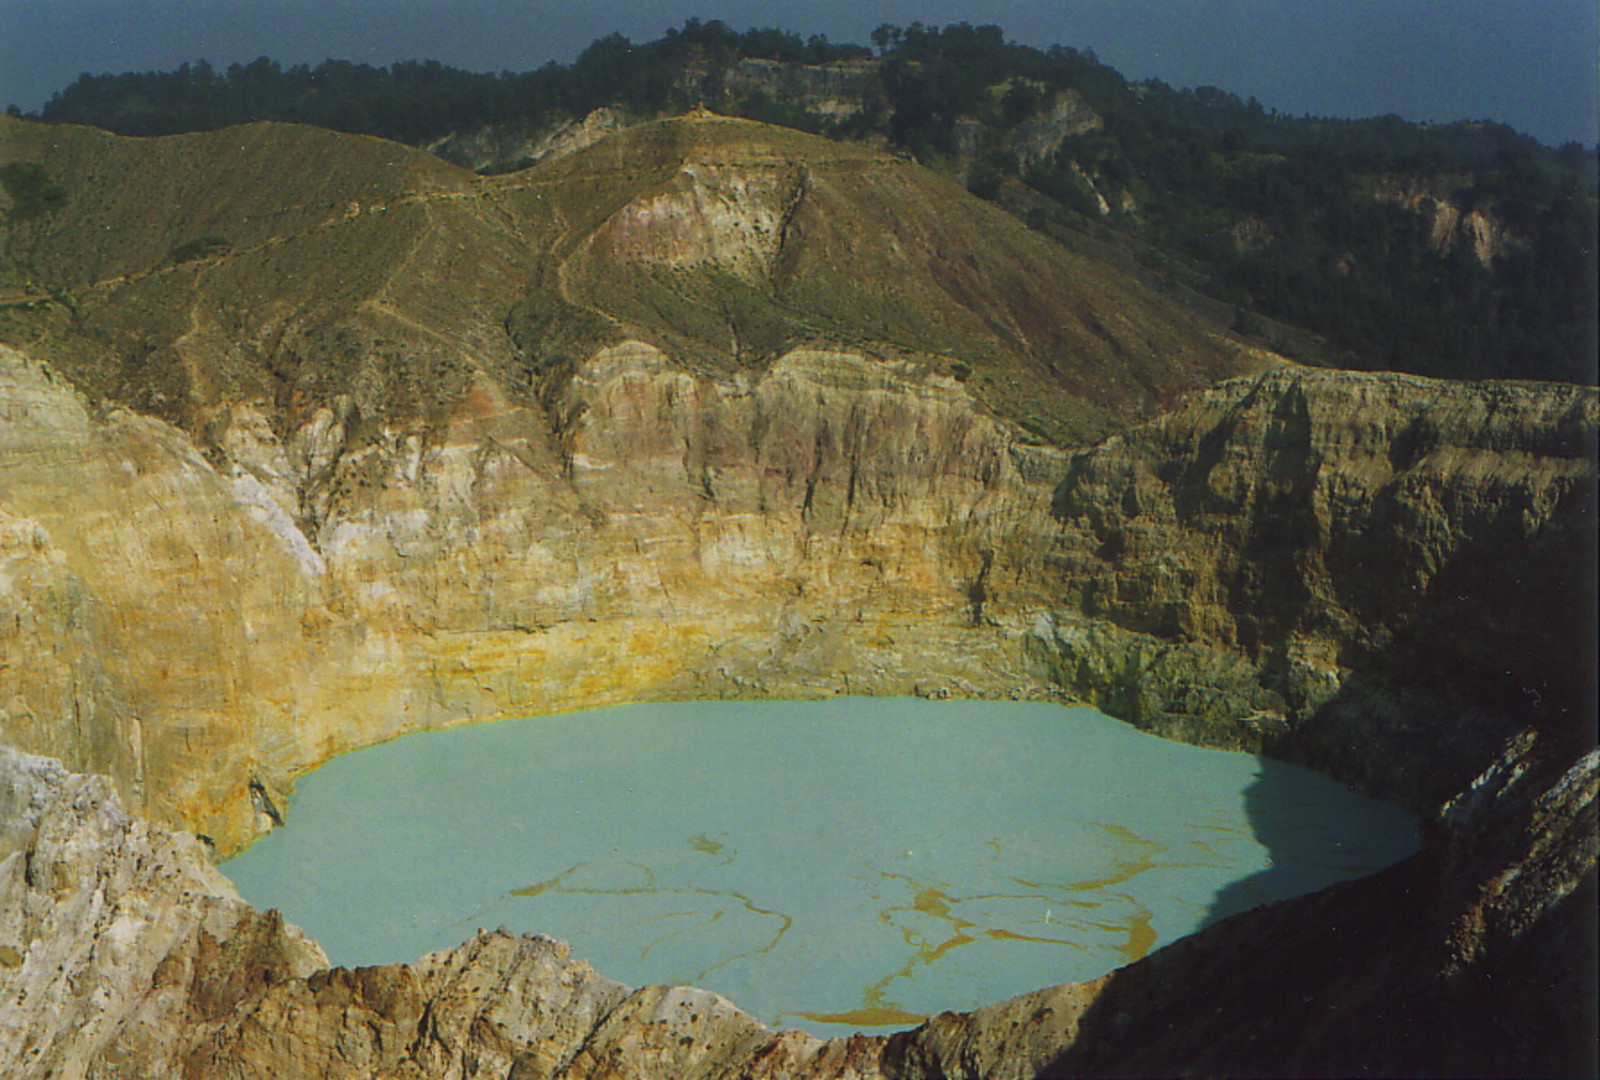 The blue lake at Keli Mutu